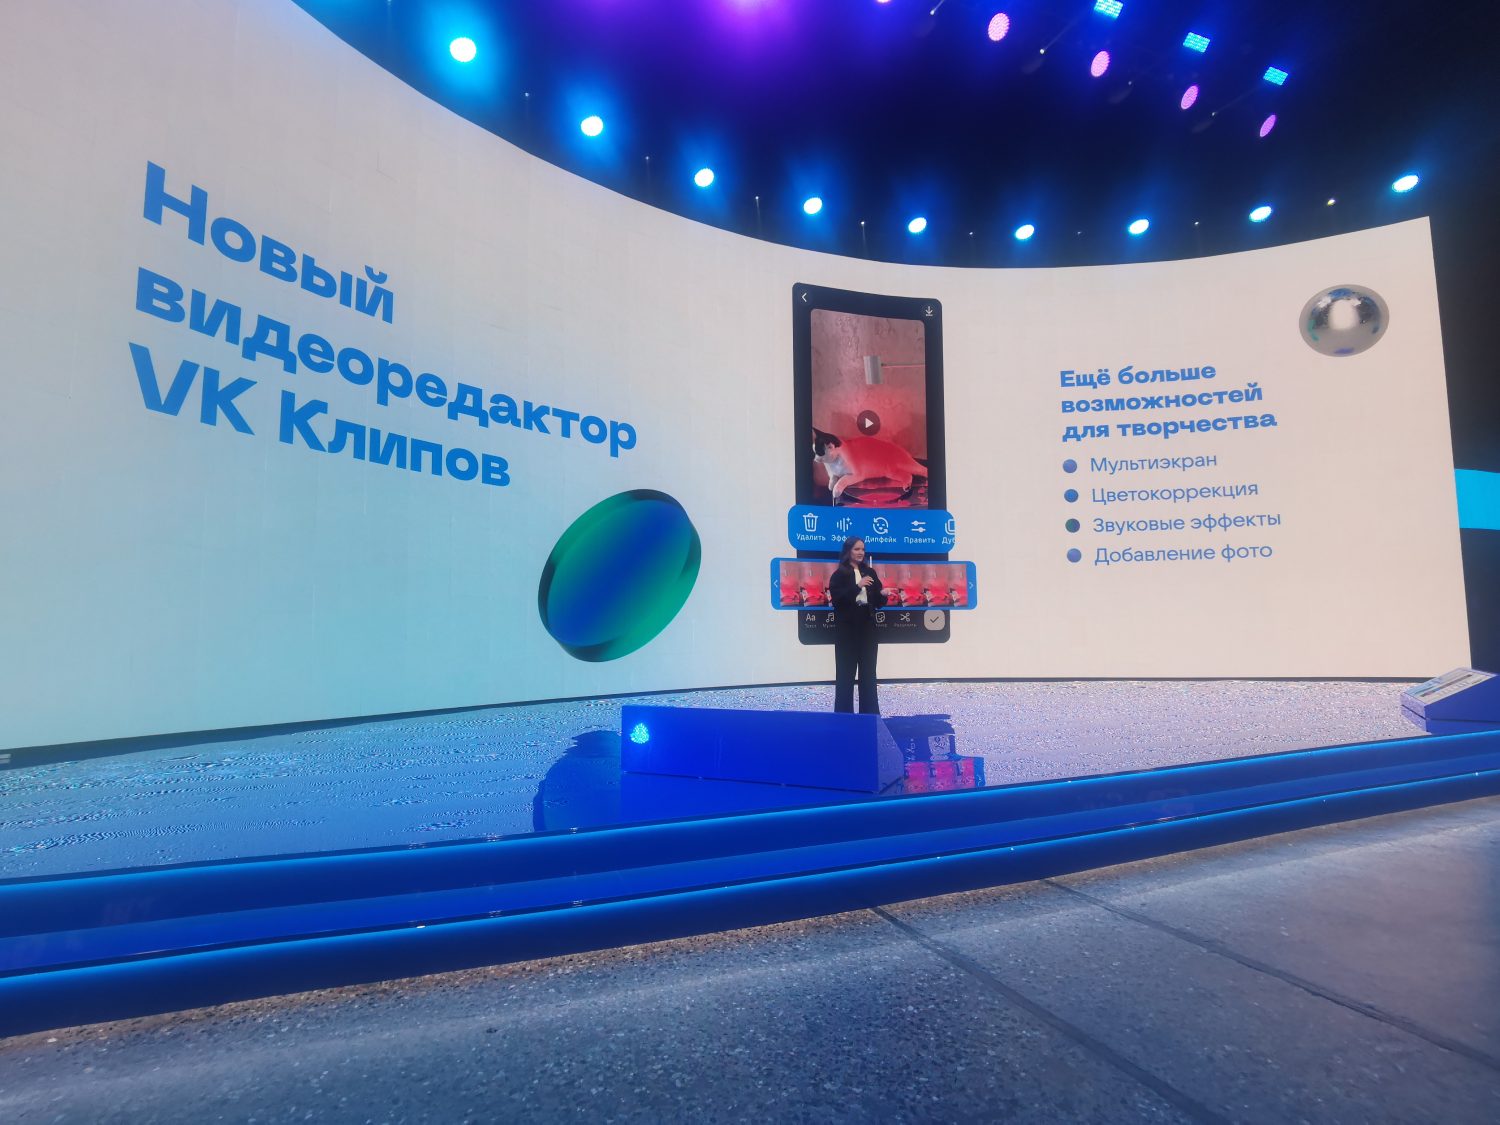 Представлены новые инструменты для авторов ВКонтакте на основе нейросетей